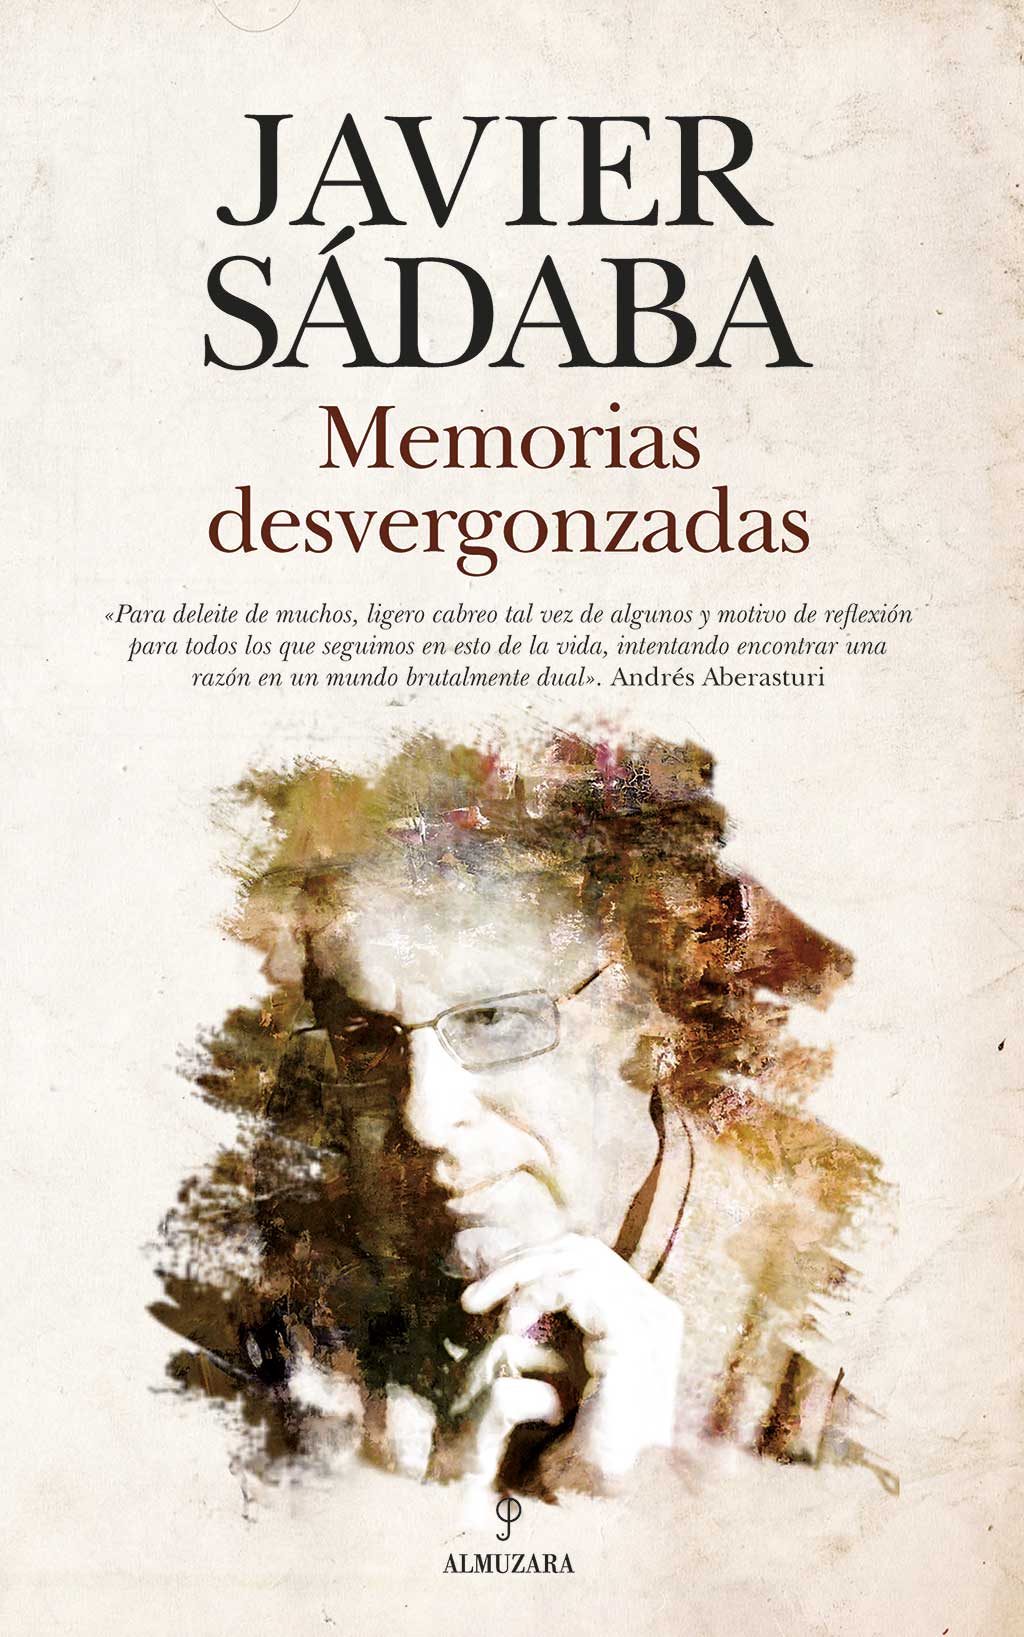 Javier Sadaba. Memorias desvergonzadas.